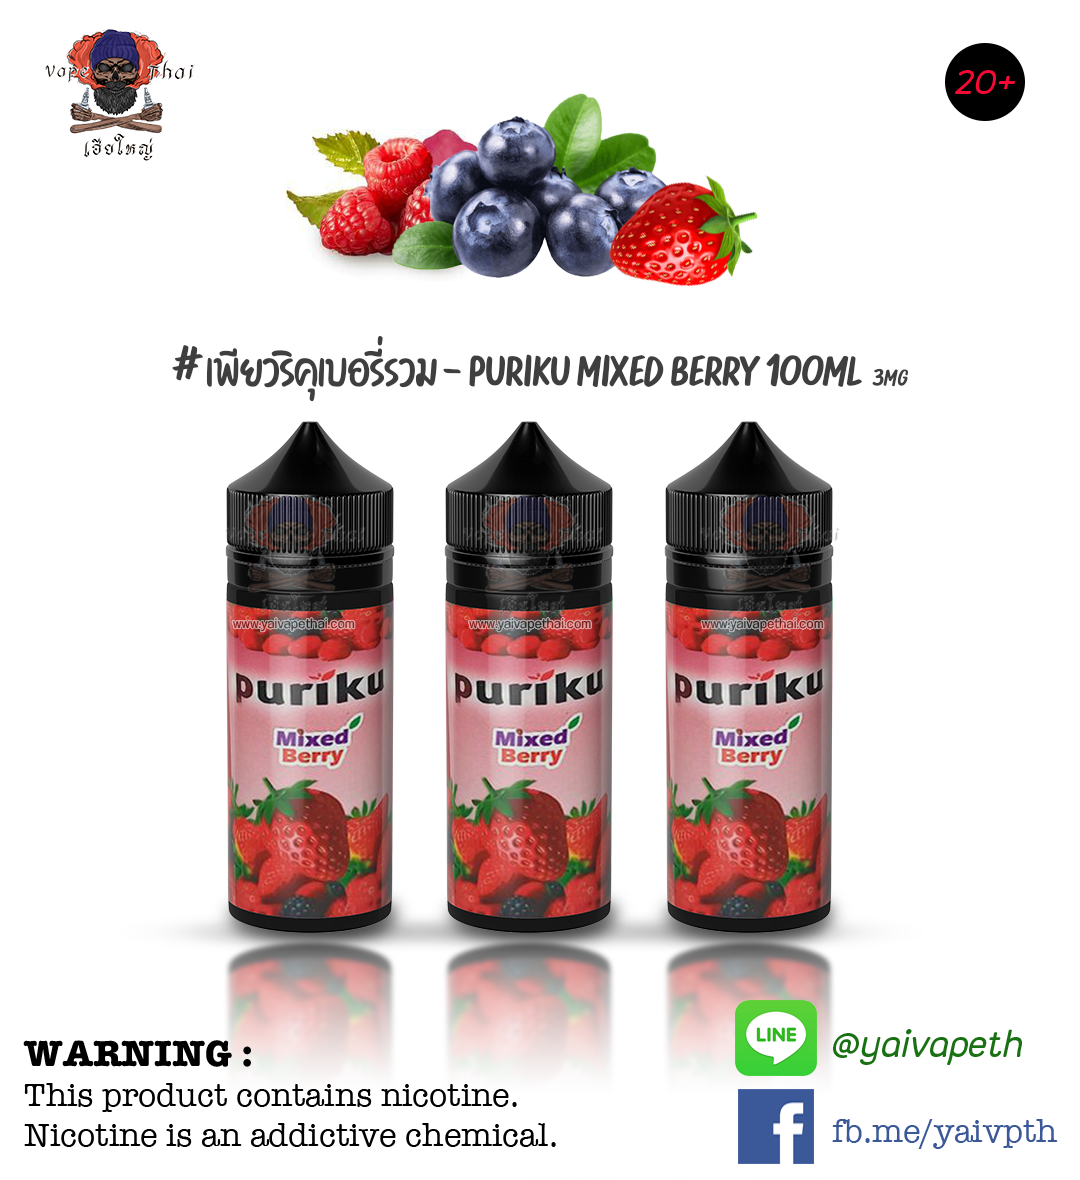 เพียวริคุเบอรี่รวม – น้ำยาบุหรี่ไฟฟ้า Puriku Mixed Berry 100ml NIC 3mg (มาเลเซีย) [เย็น] ของแท้ 100%